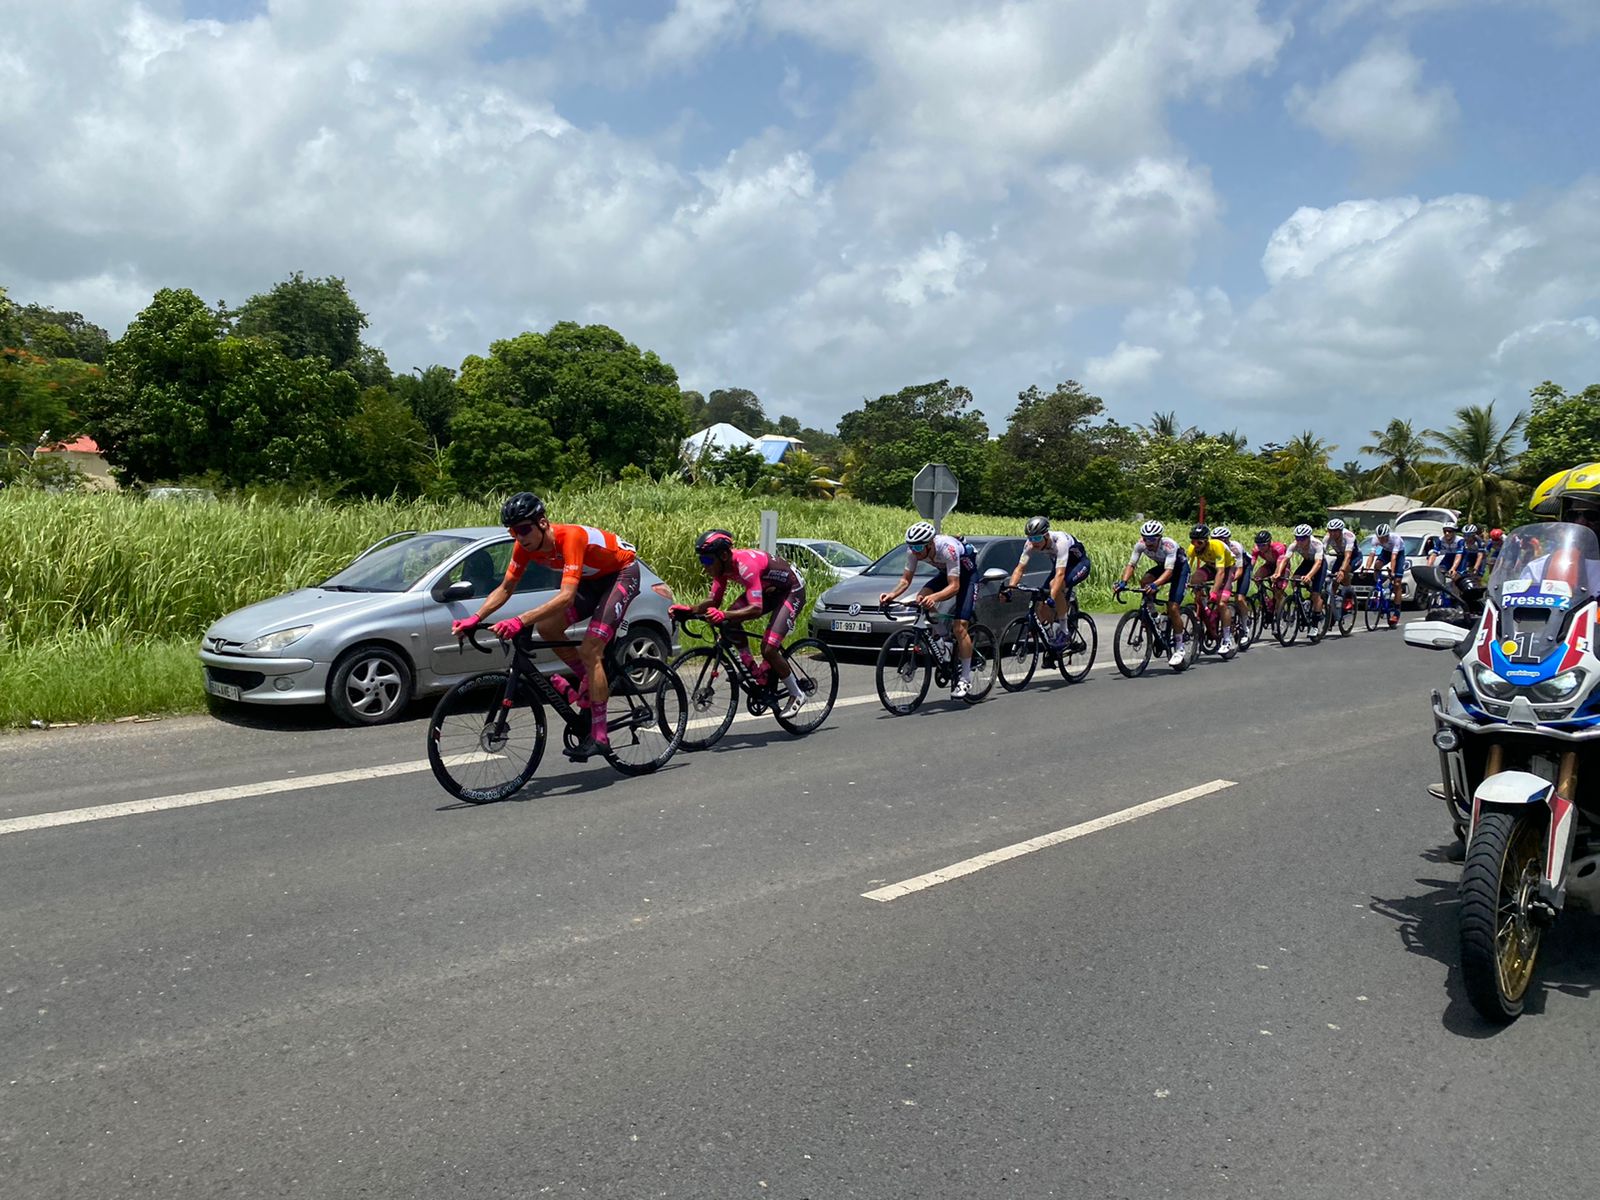     Tour cycliste de Guadeloupe : les coureurs guadeloupéens mieux rémunérés 

